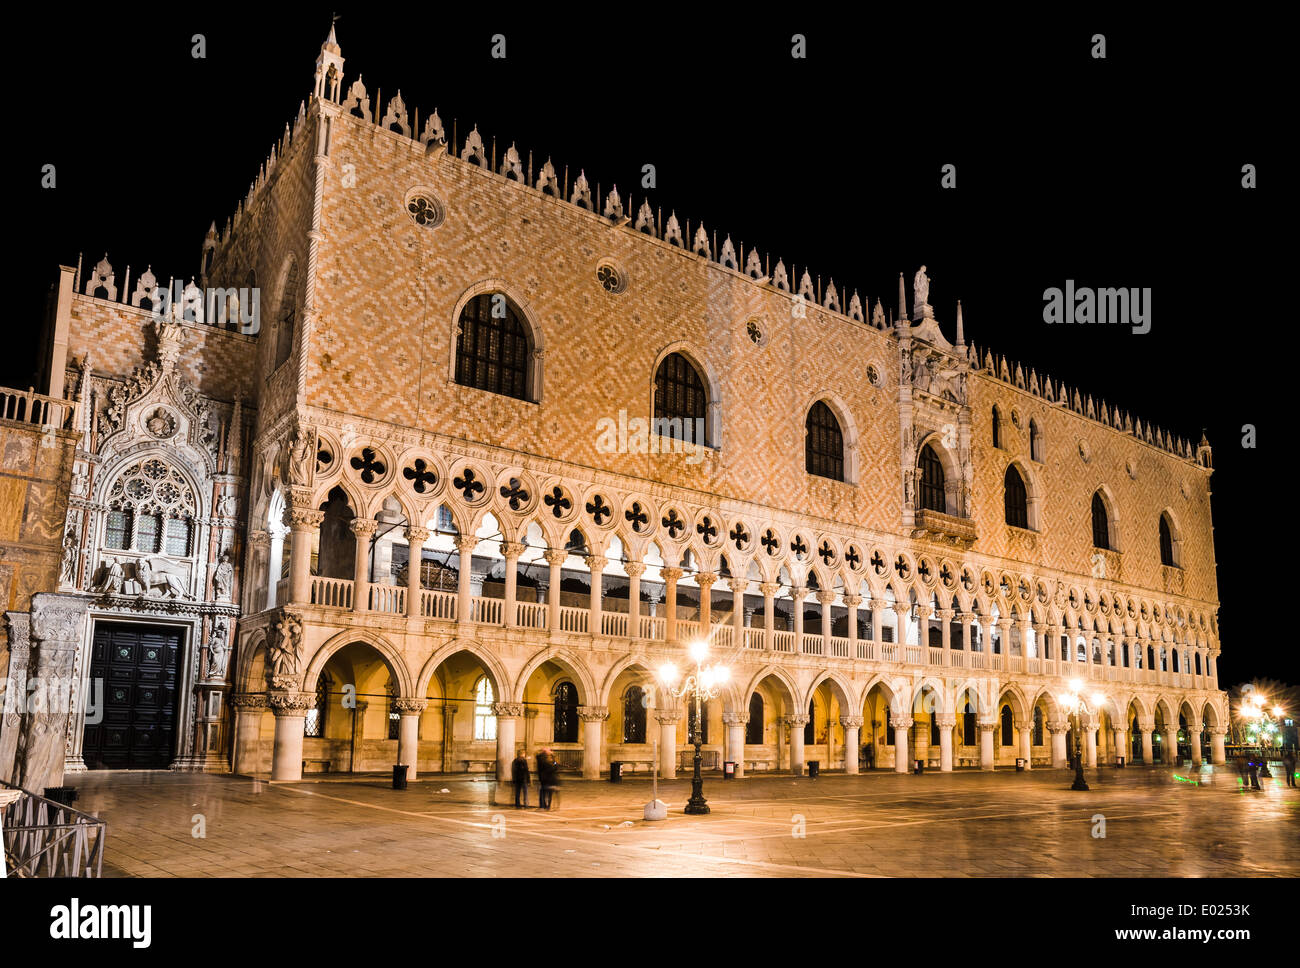 Venezia, Italia. Scena notturna con il Palazzo Ducale in piazza San Marco, costruita in stile gotico veneziano, cultura italiana punto di riferimento Foto Stock